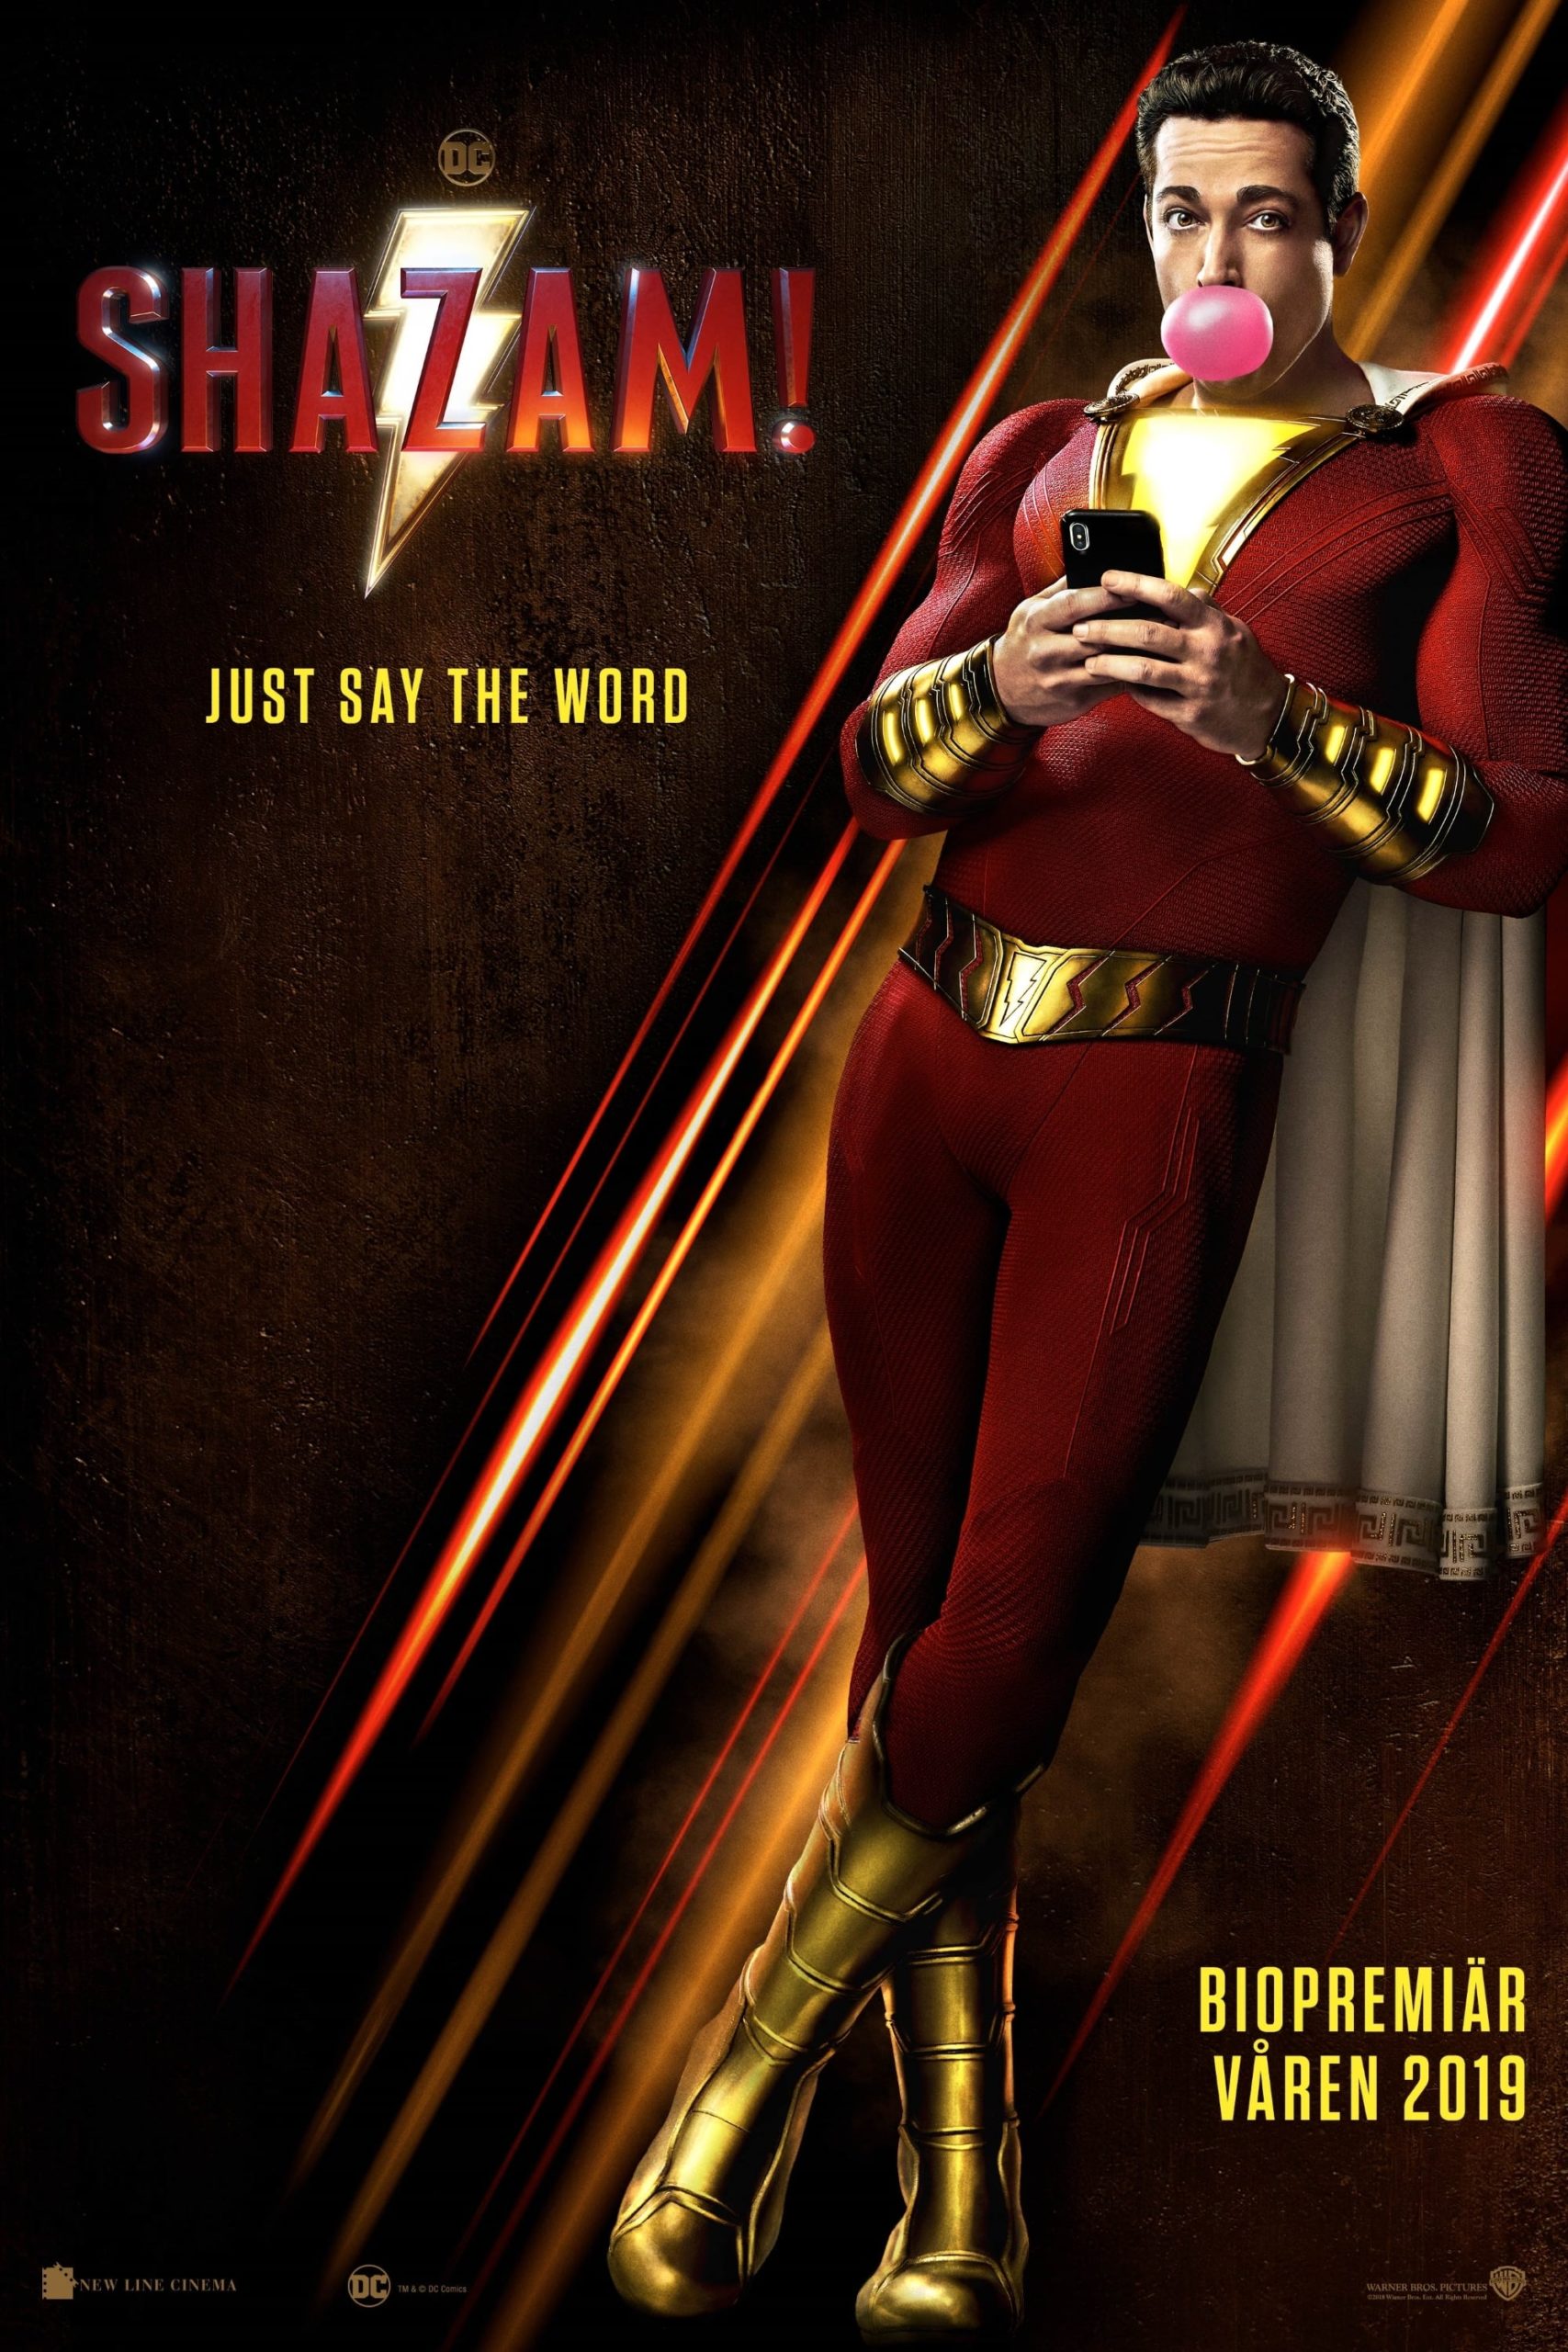 Poster de la película "Shazam!"